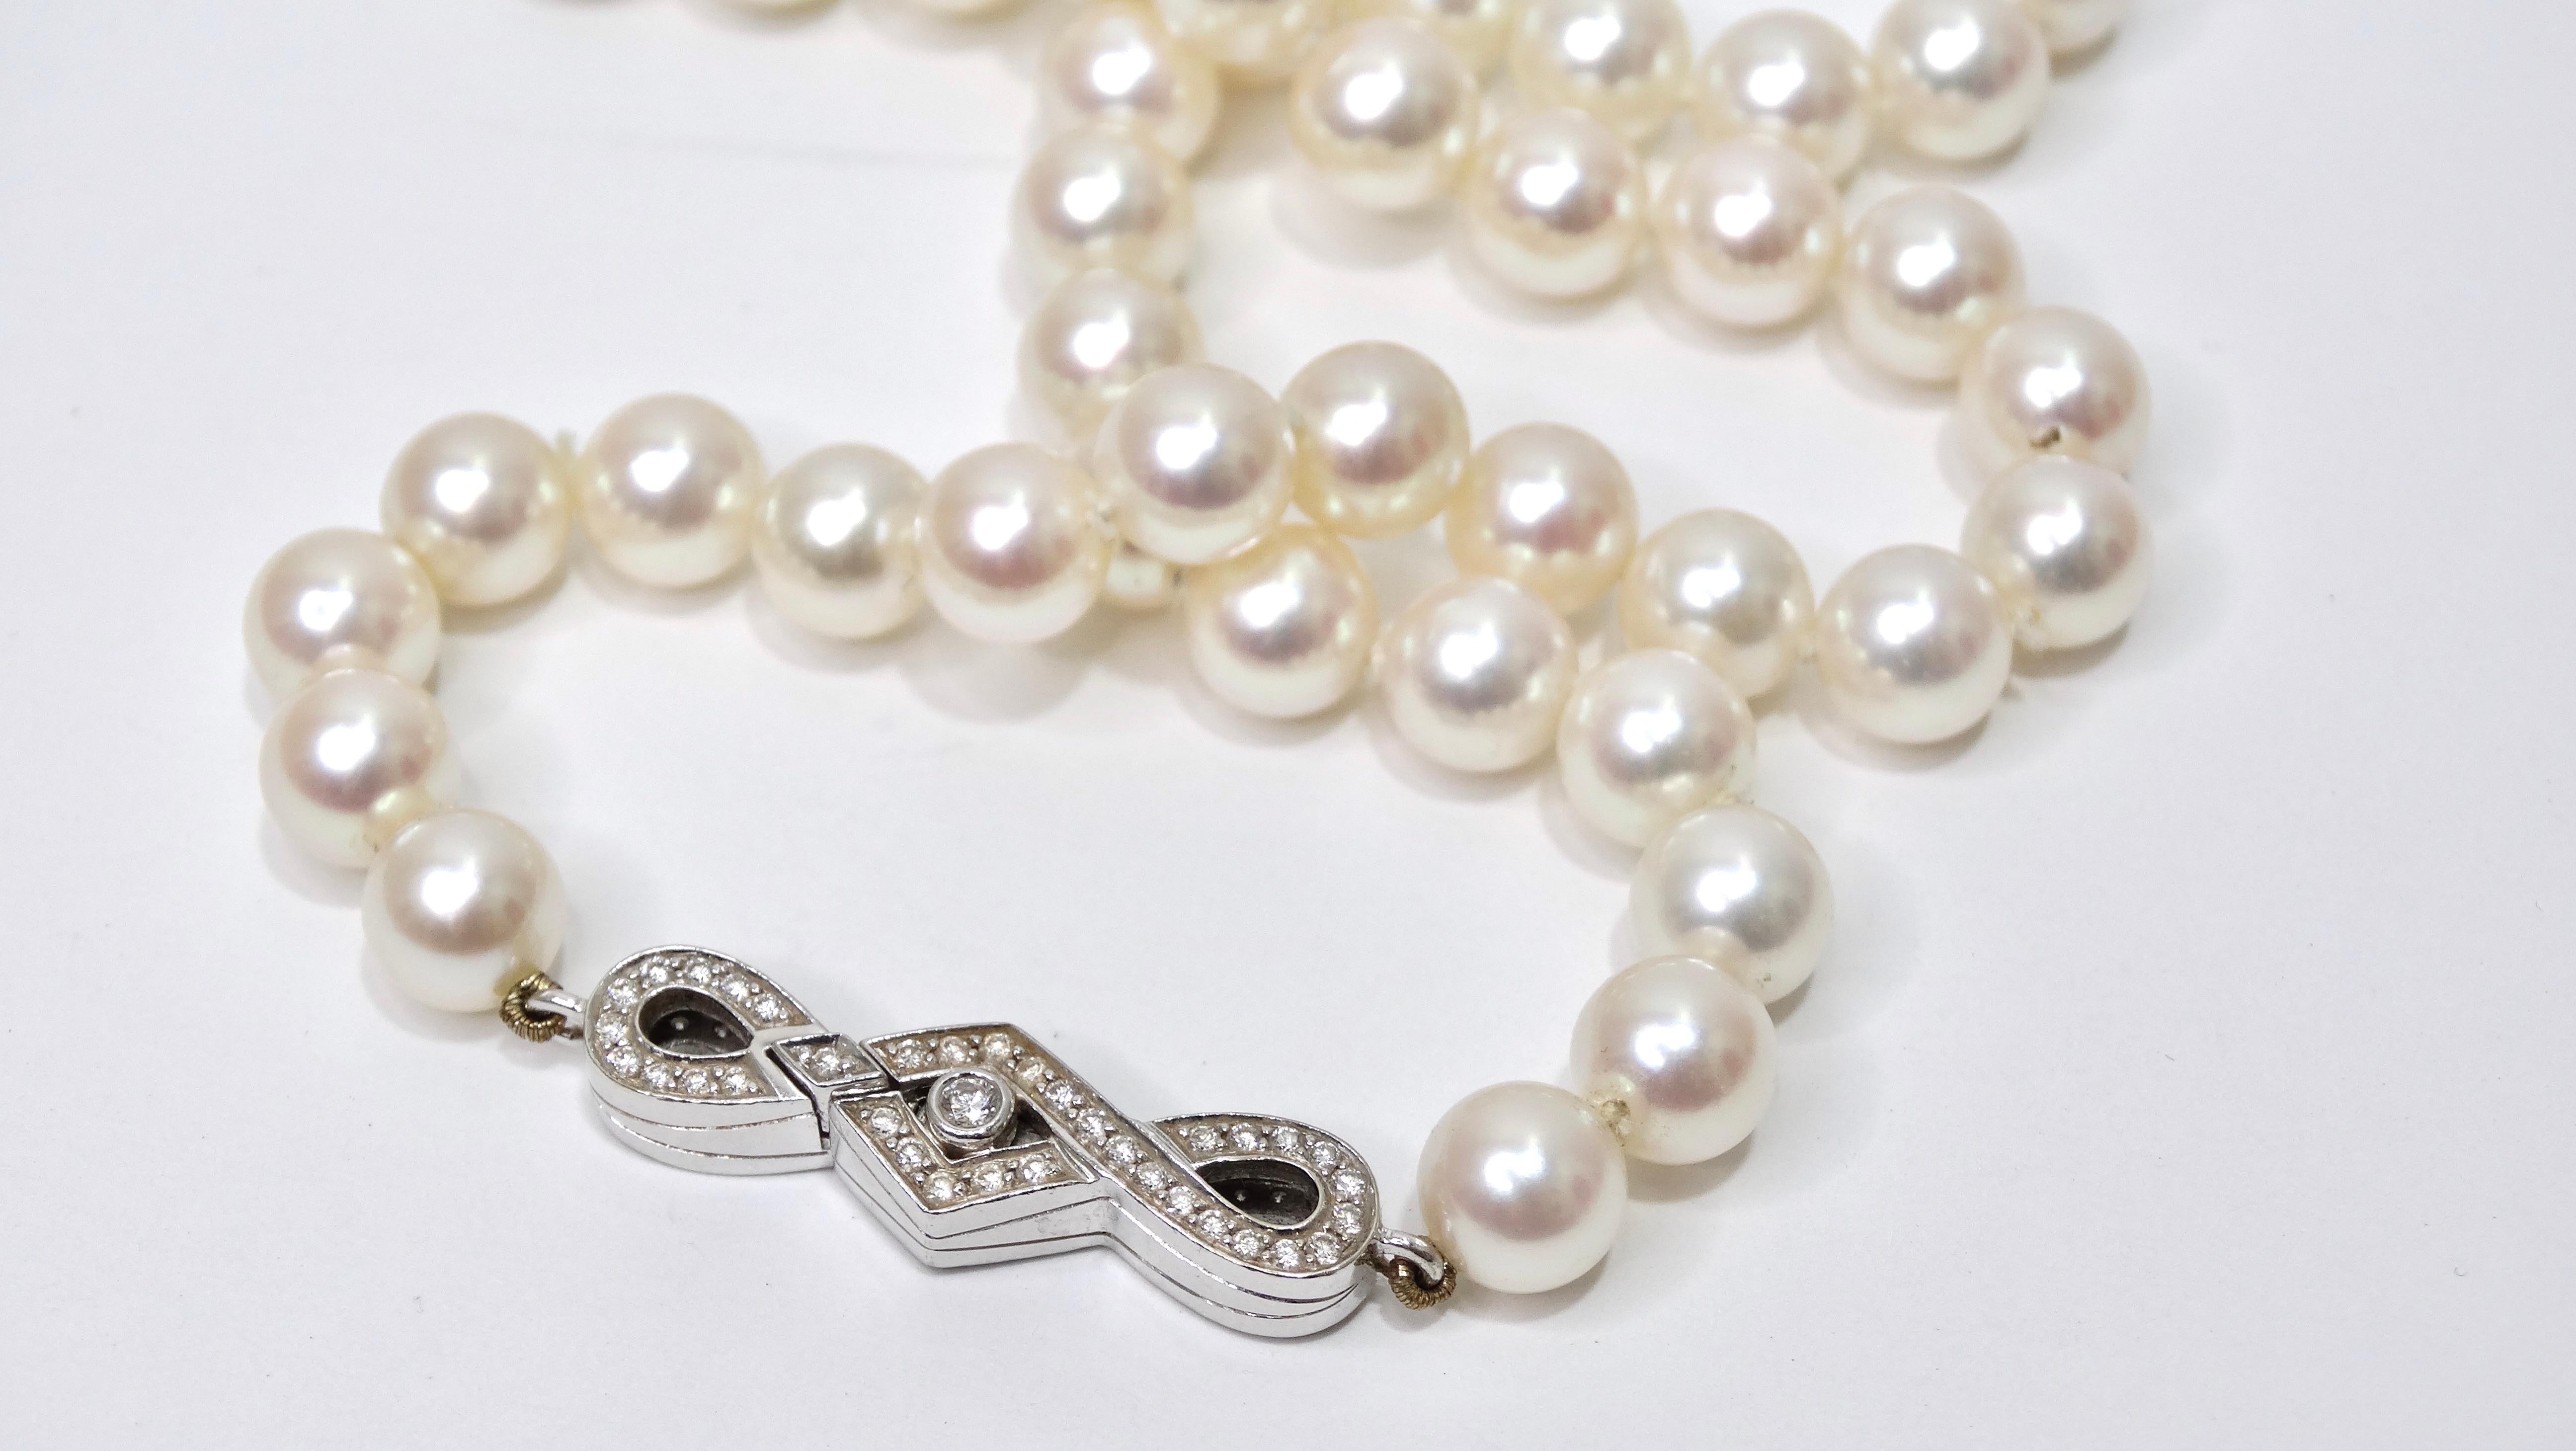 Eine wunderschön gearbeitete, elegante und authentische Süßwasserperlenkette, die jeder in seiner Schmucksammlung verwenden kann. Perlen sind dekadent und gehören zu den begehrtesten MATERIALEN für Schmuck. Diese Halskette ist aus 18 Karat Weißgold